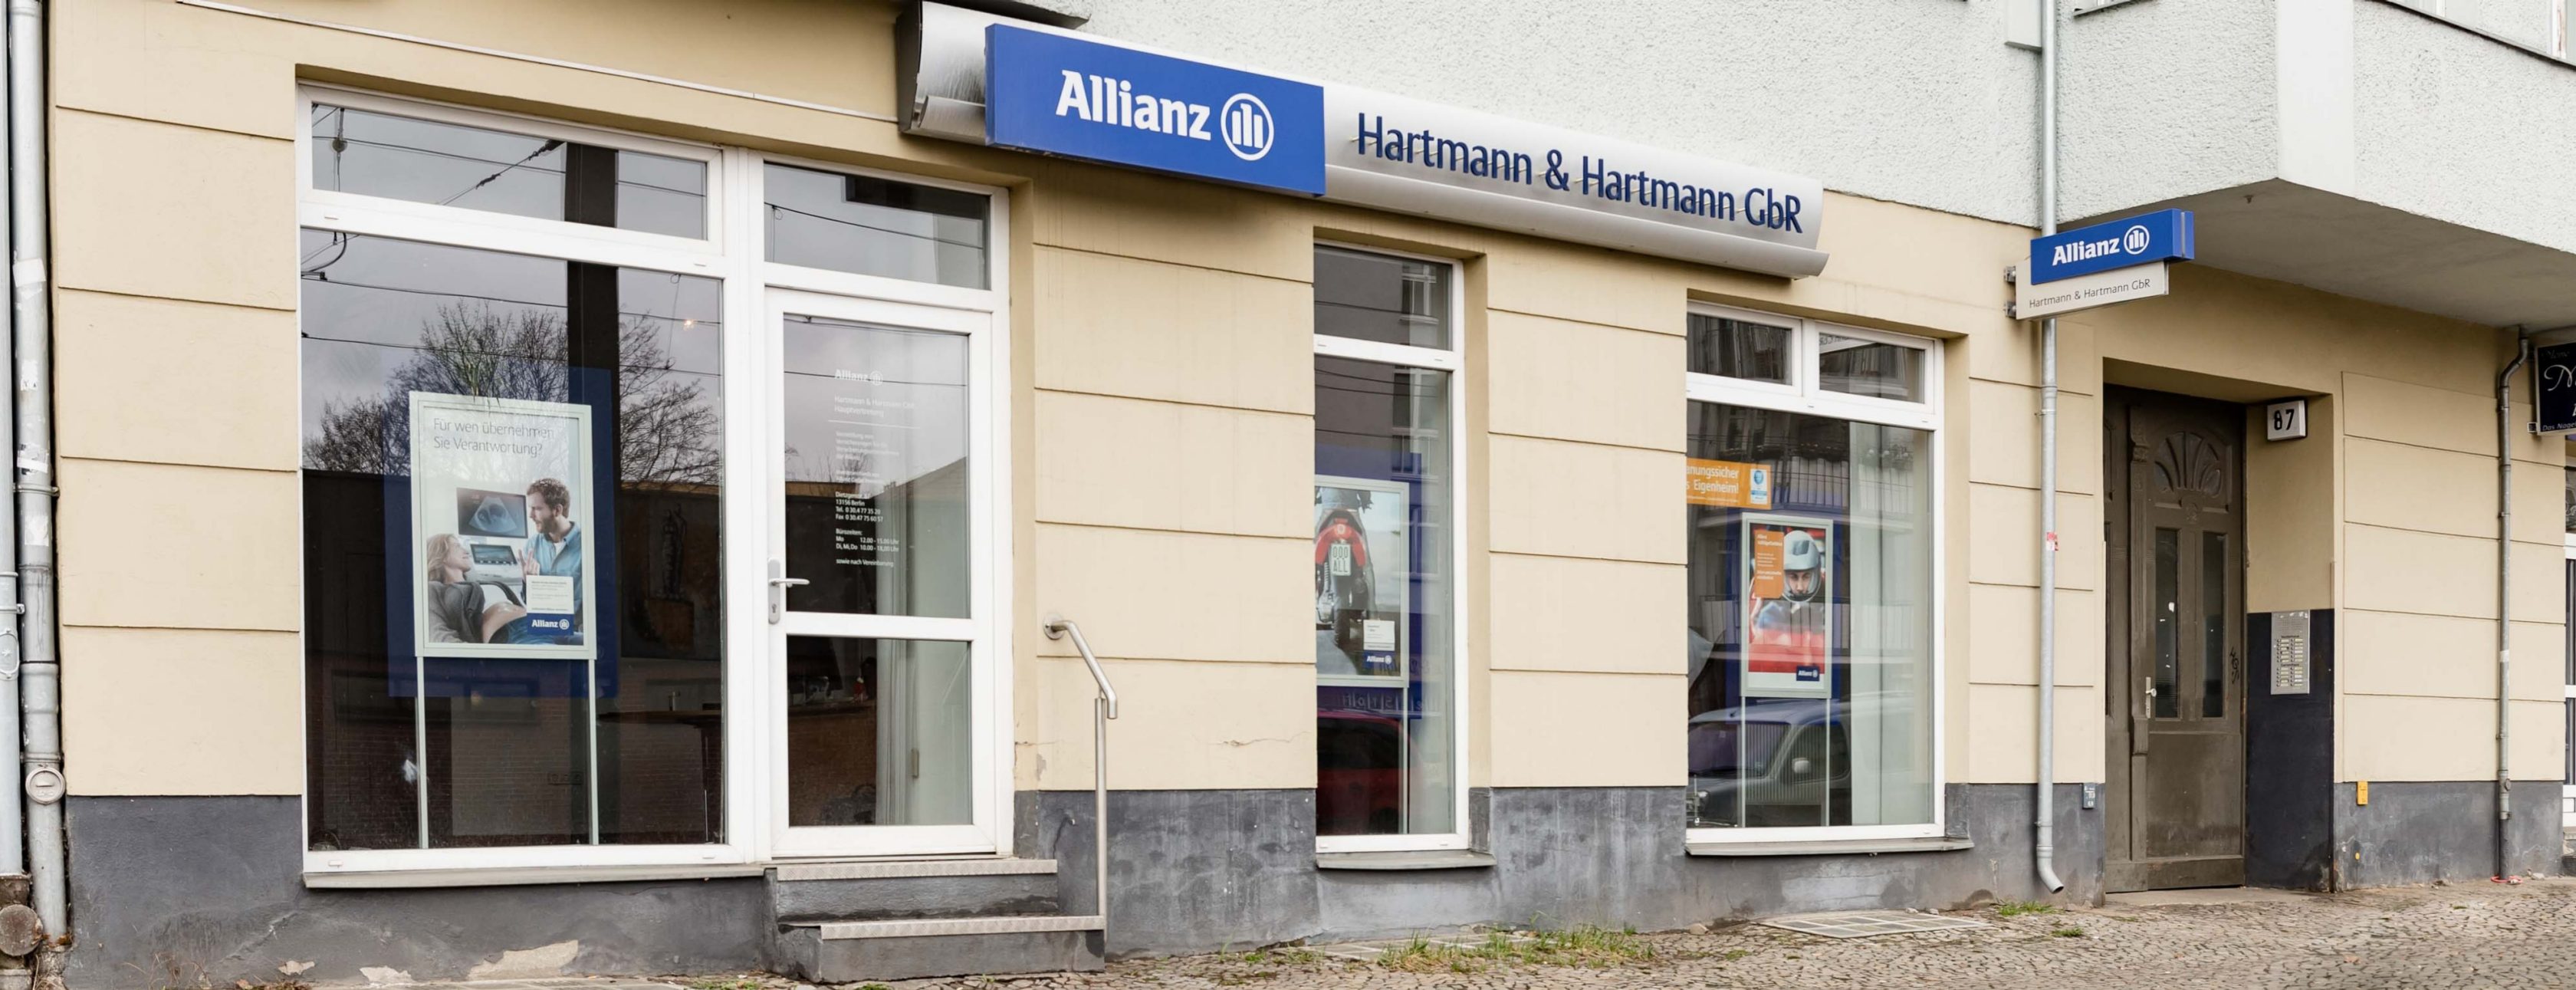 Allianz Versicherung Hartmann und Hartmann GbR Berlin - Allianz Versicherungen Berlin Niederschönhausen